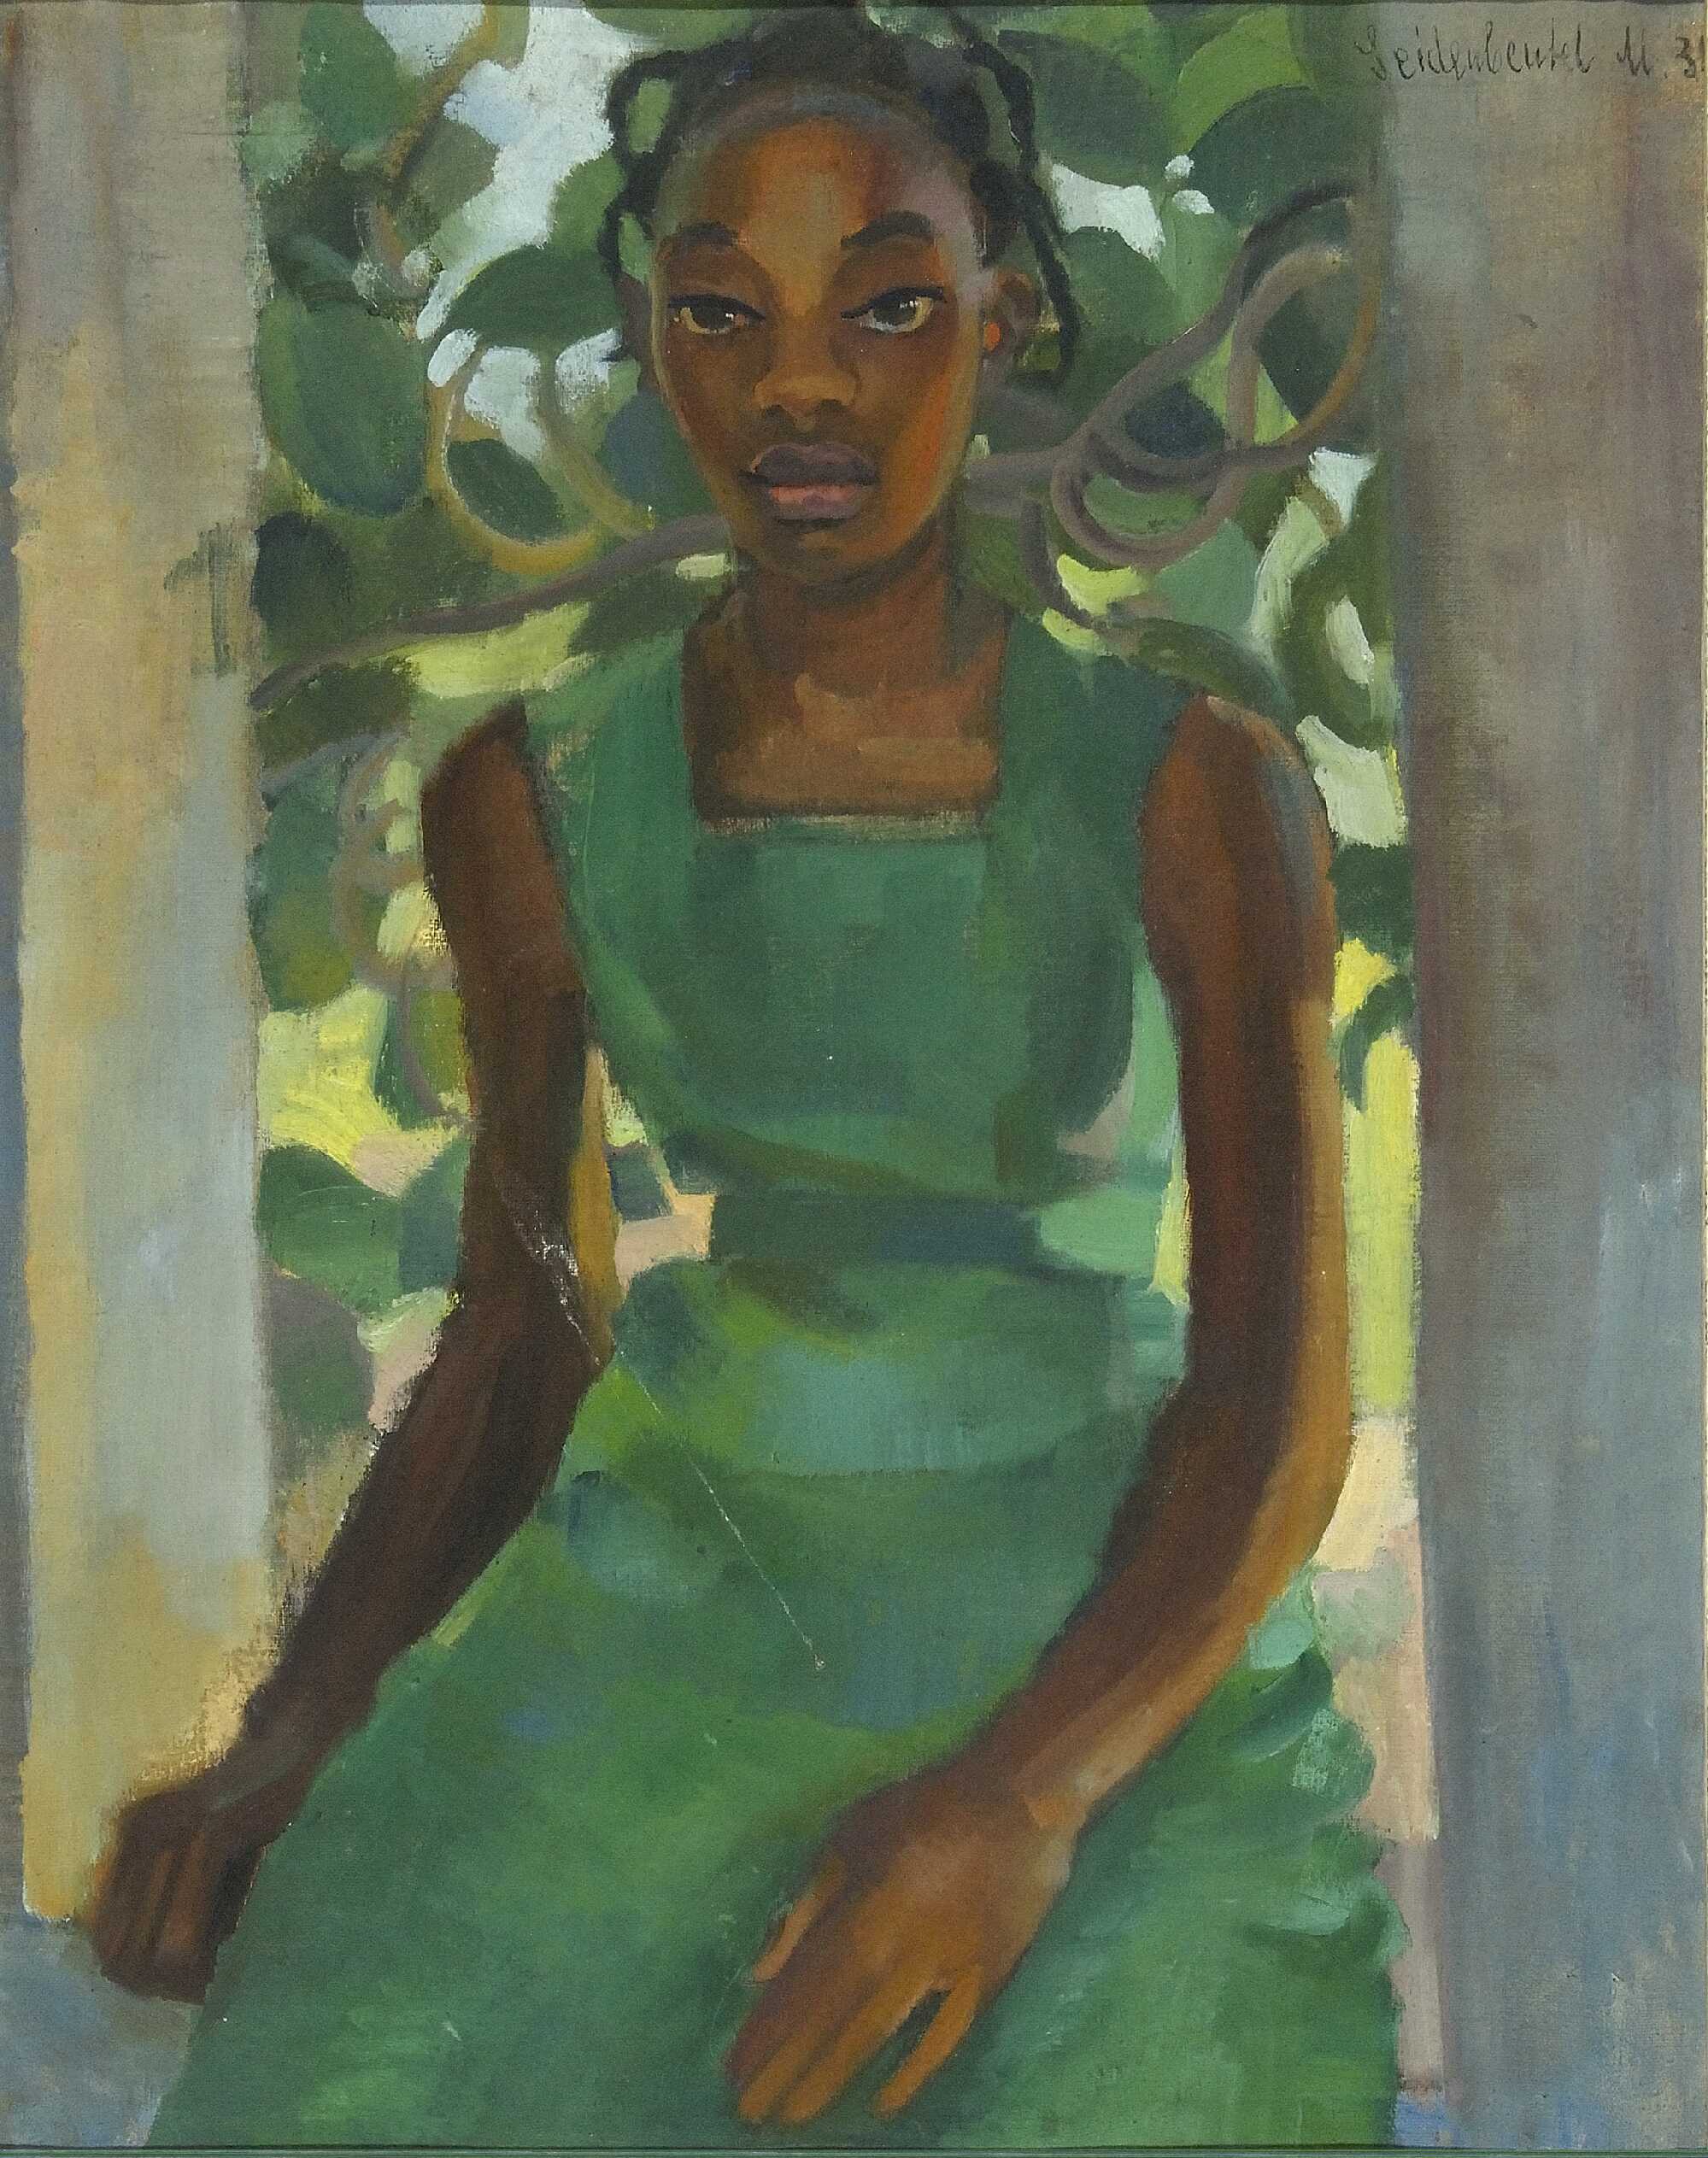 綠裙女孩 by Menasze Seidenbeutel - 1931 - 60 x 40 cm 